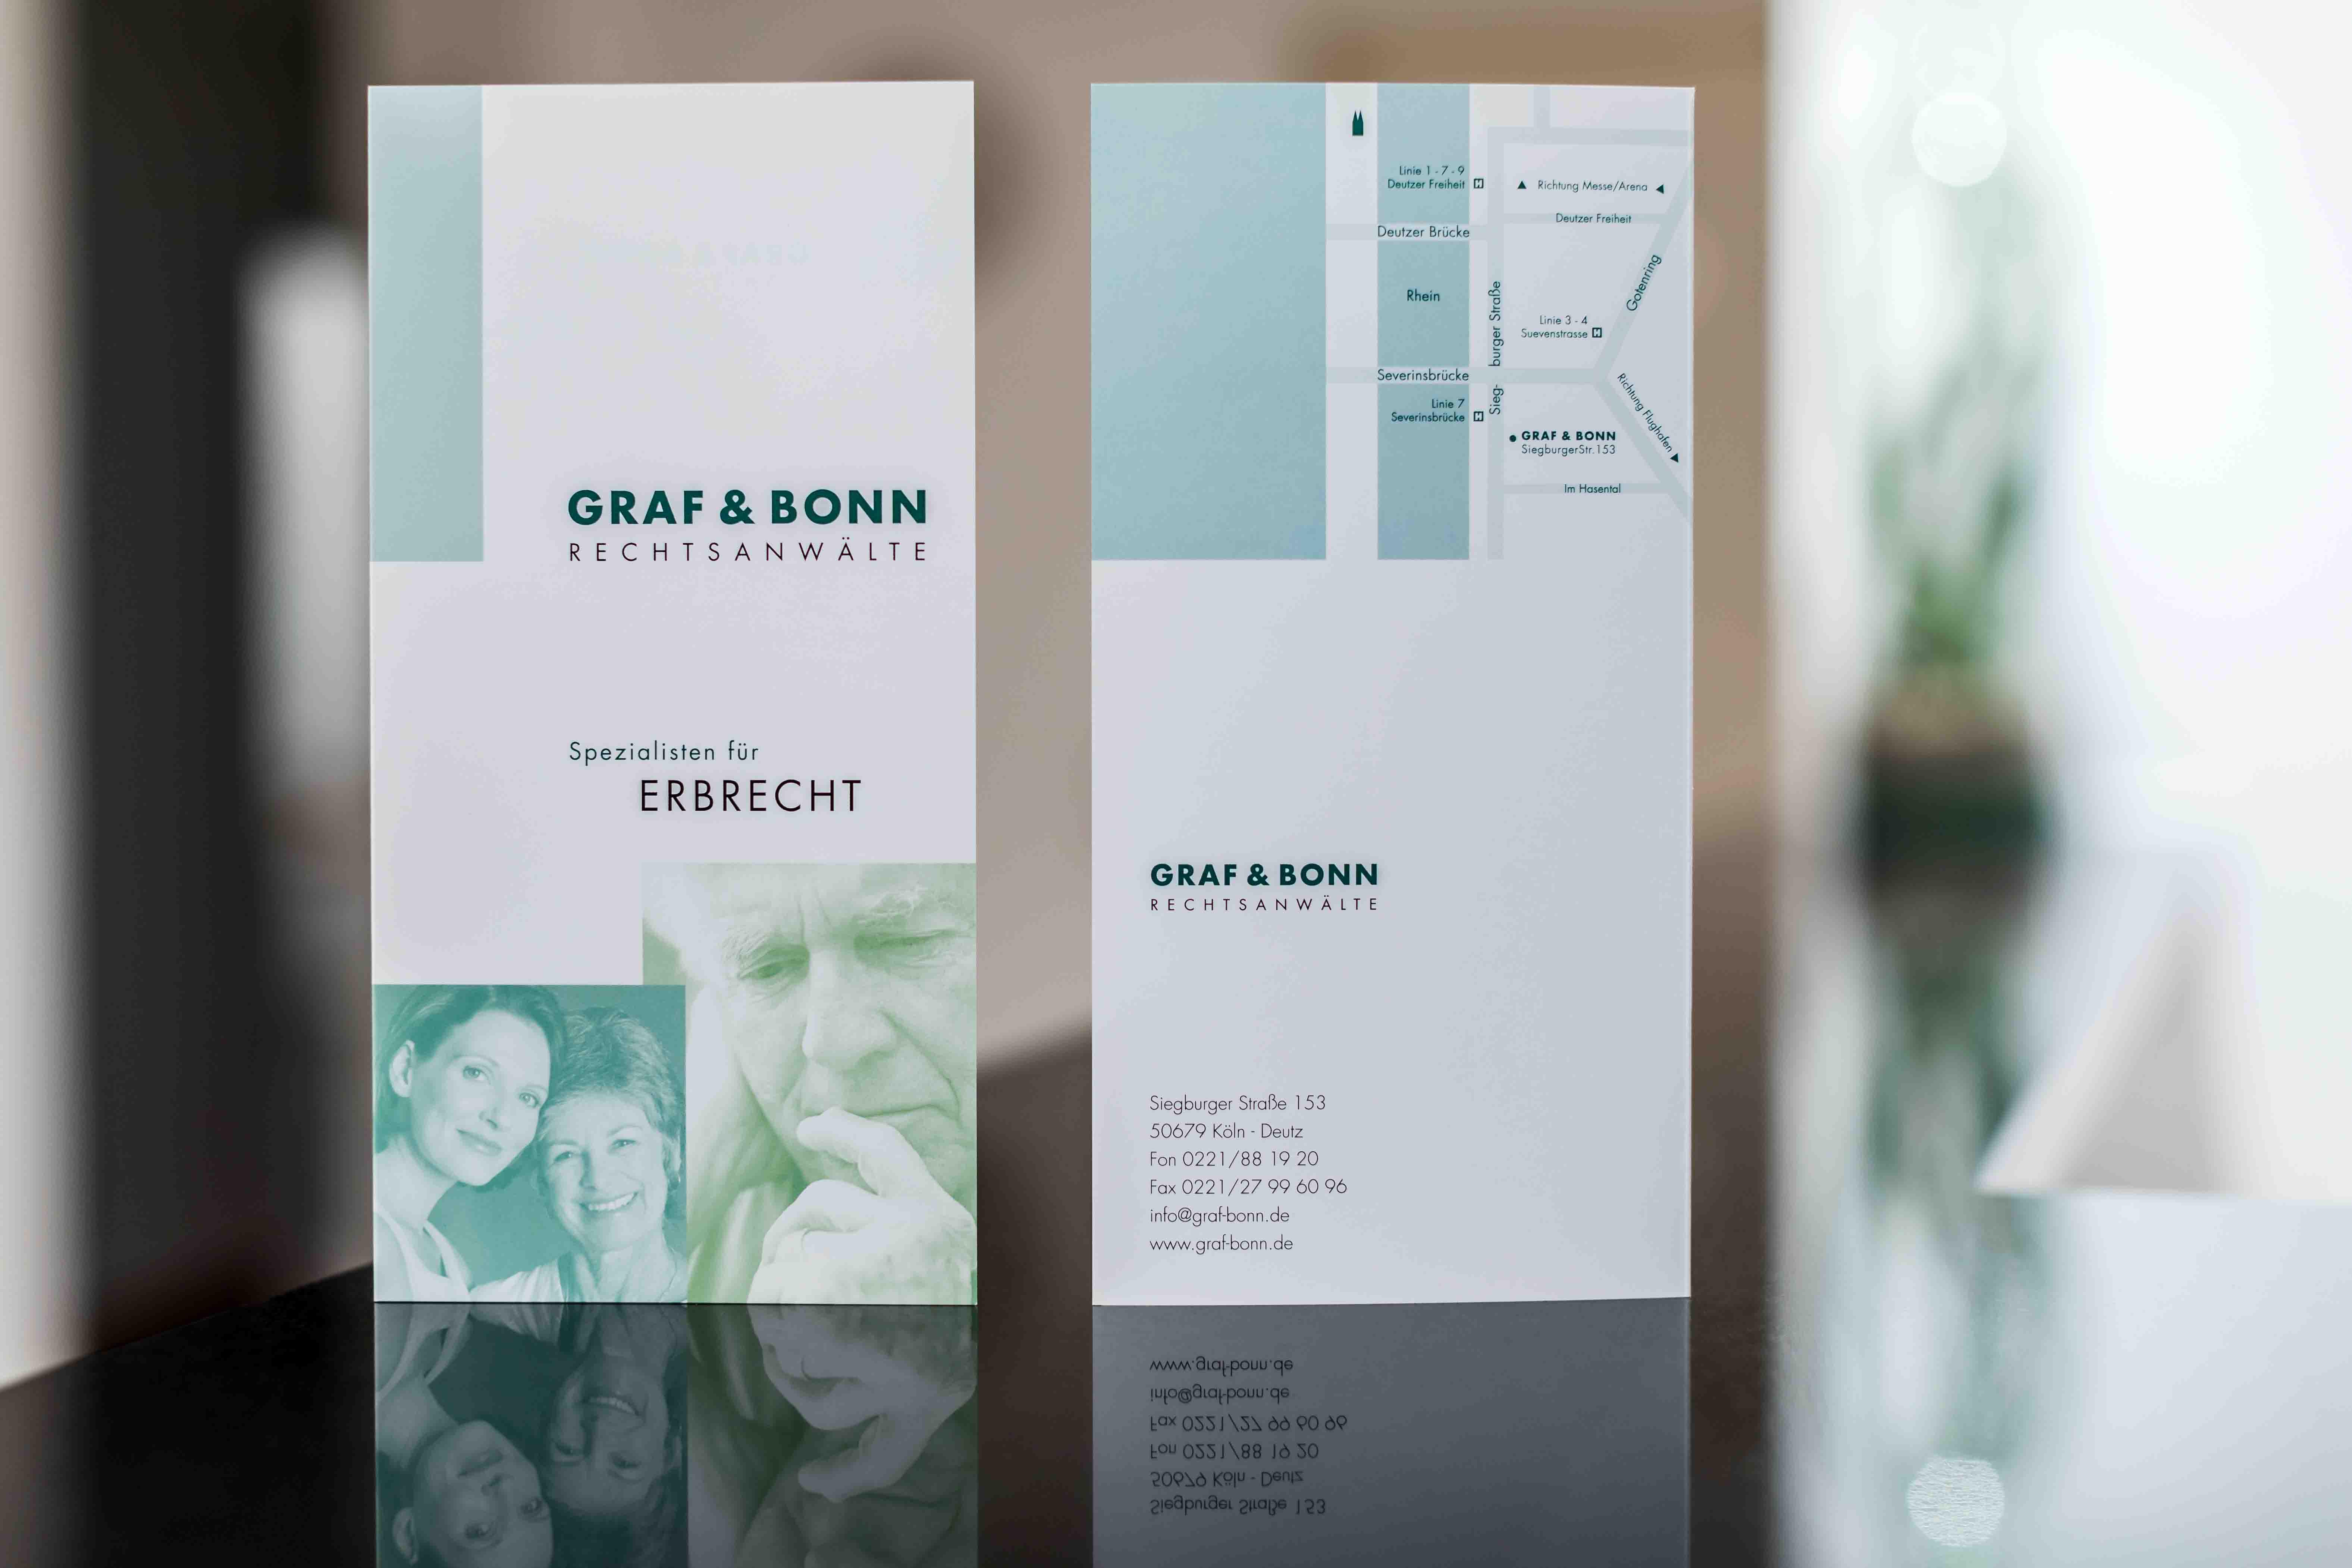 Bilder GRAF | BONN | LINDEMANN Sozialrecht & Strafrecht Köln